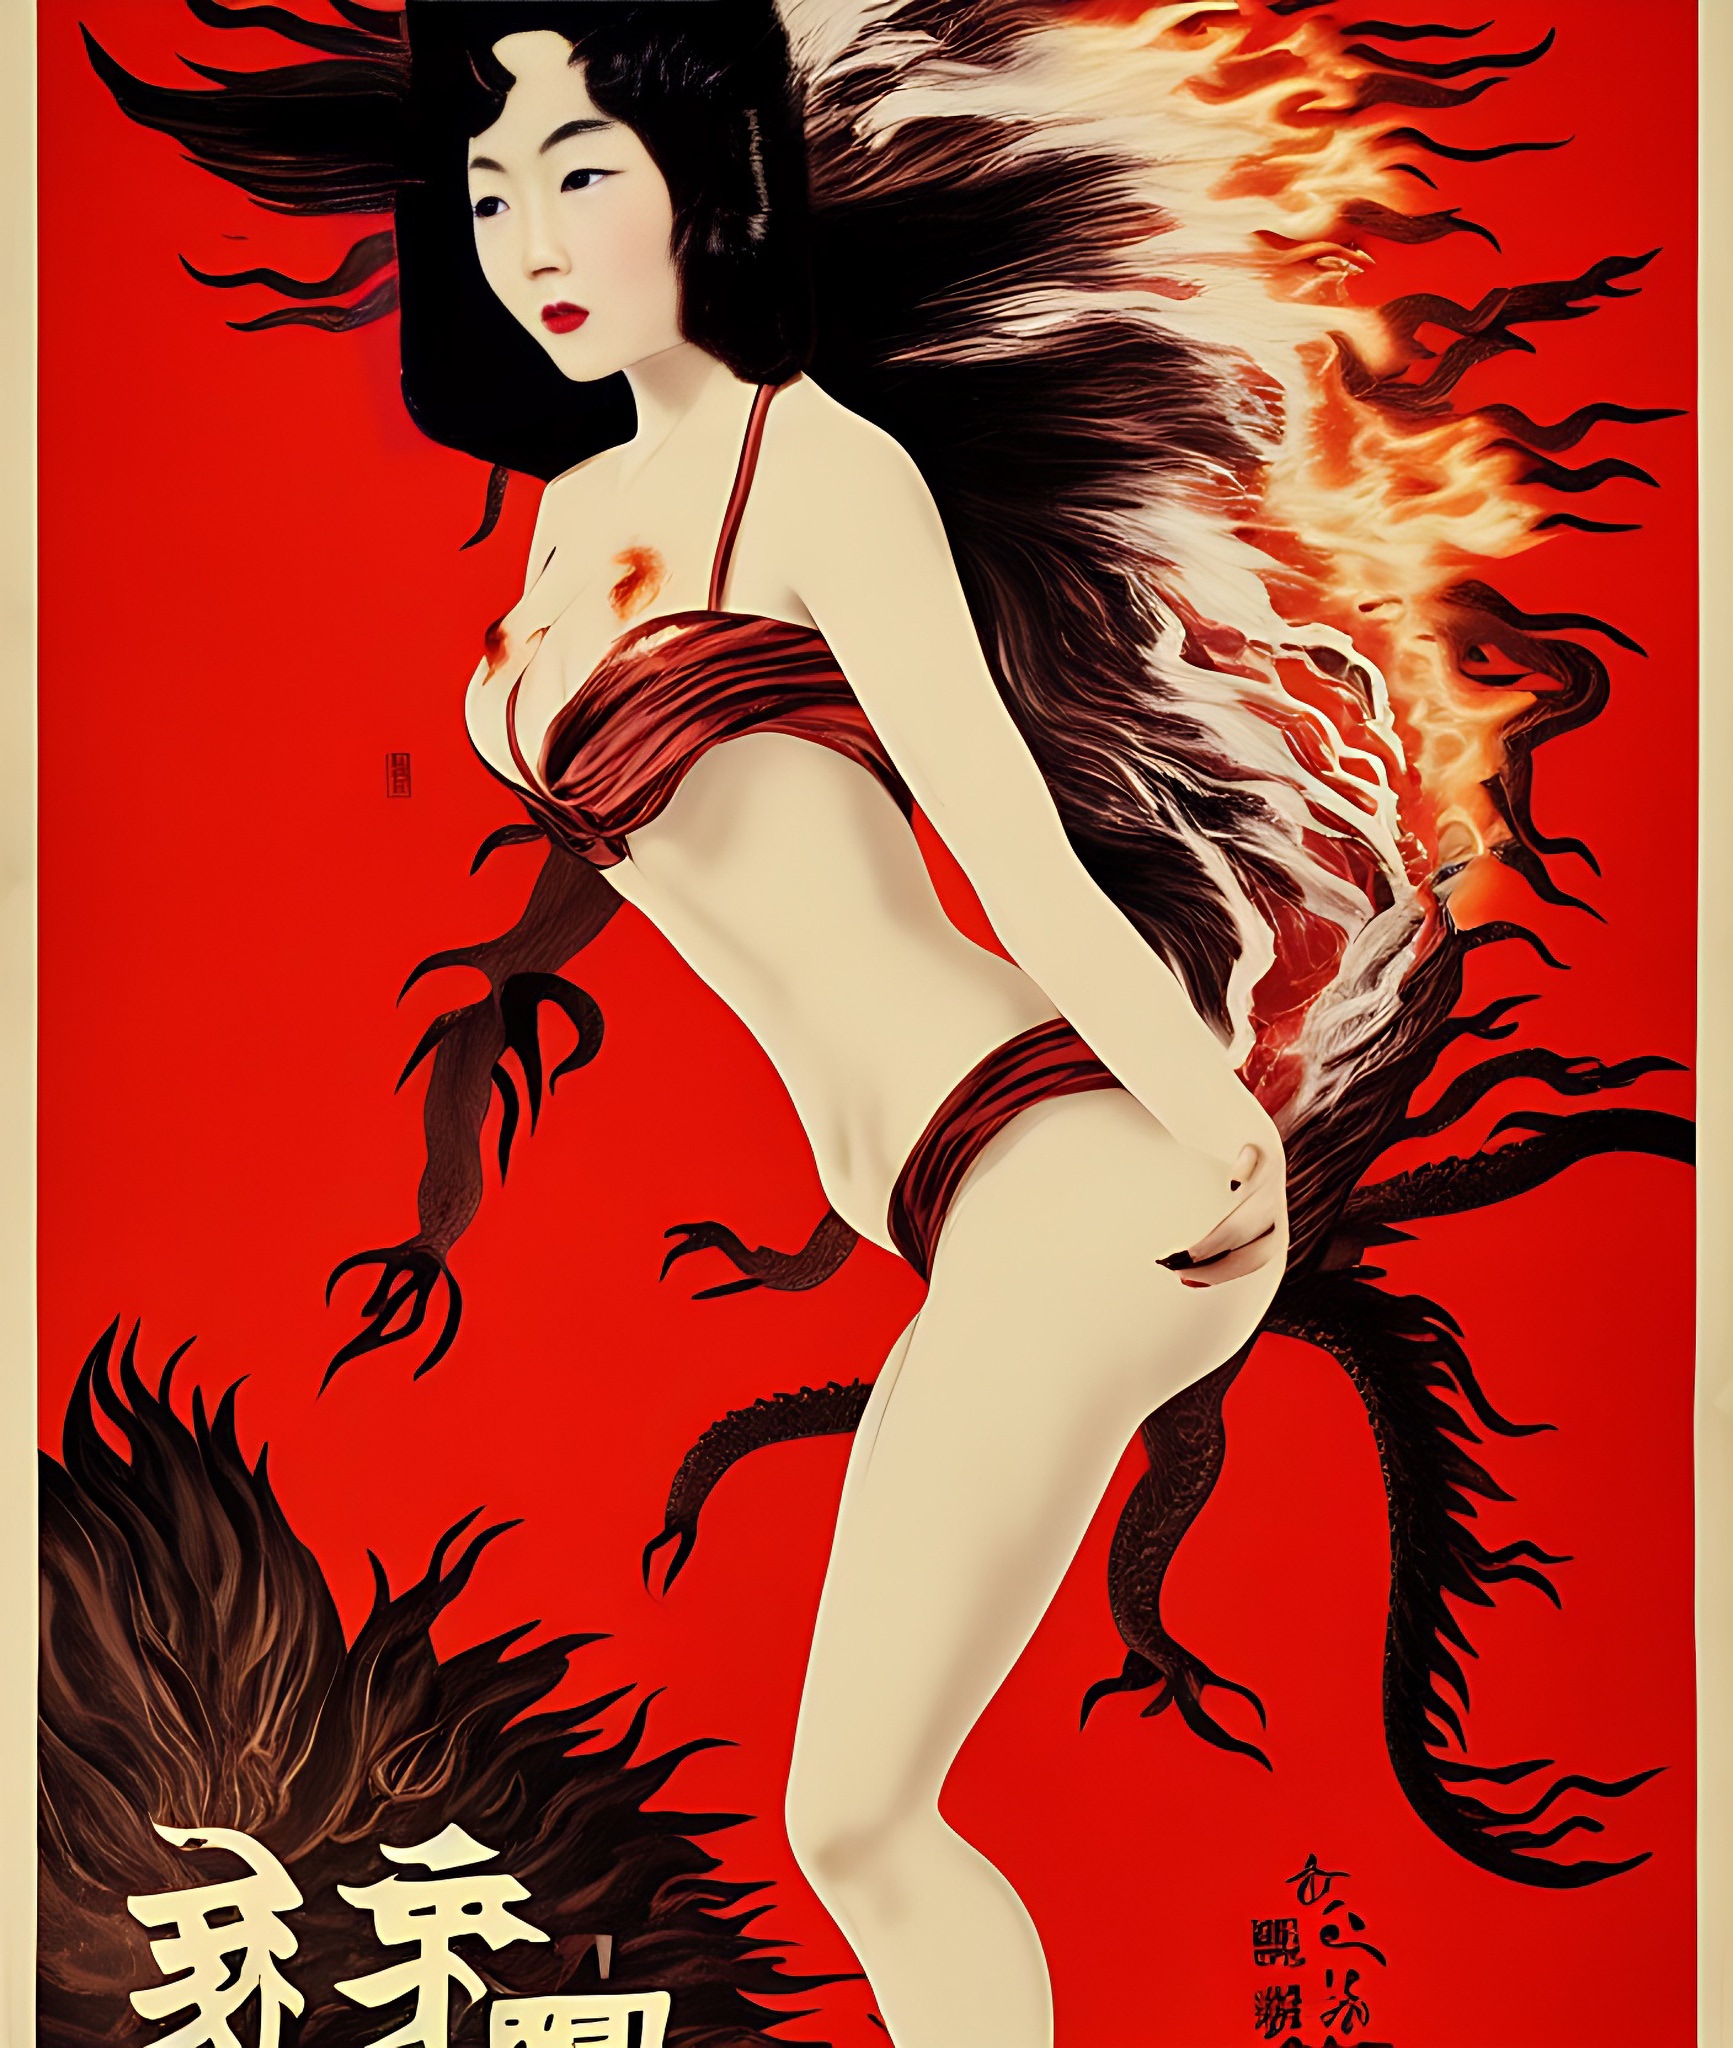 vintage-movie-poster-flames-girl-dragon-hongkong-7